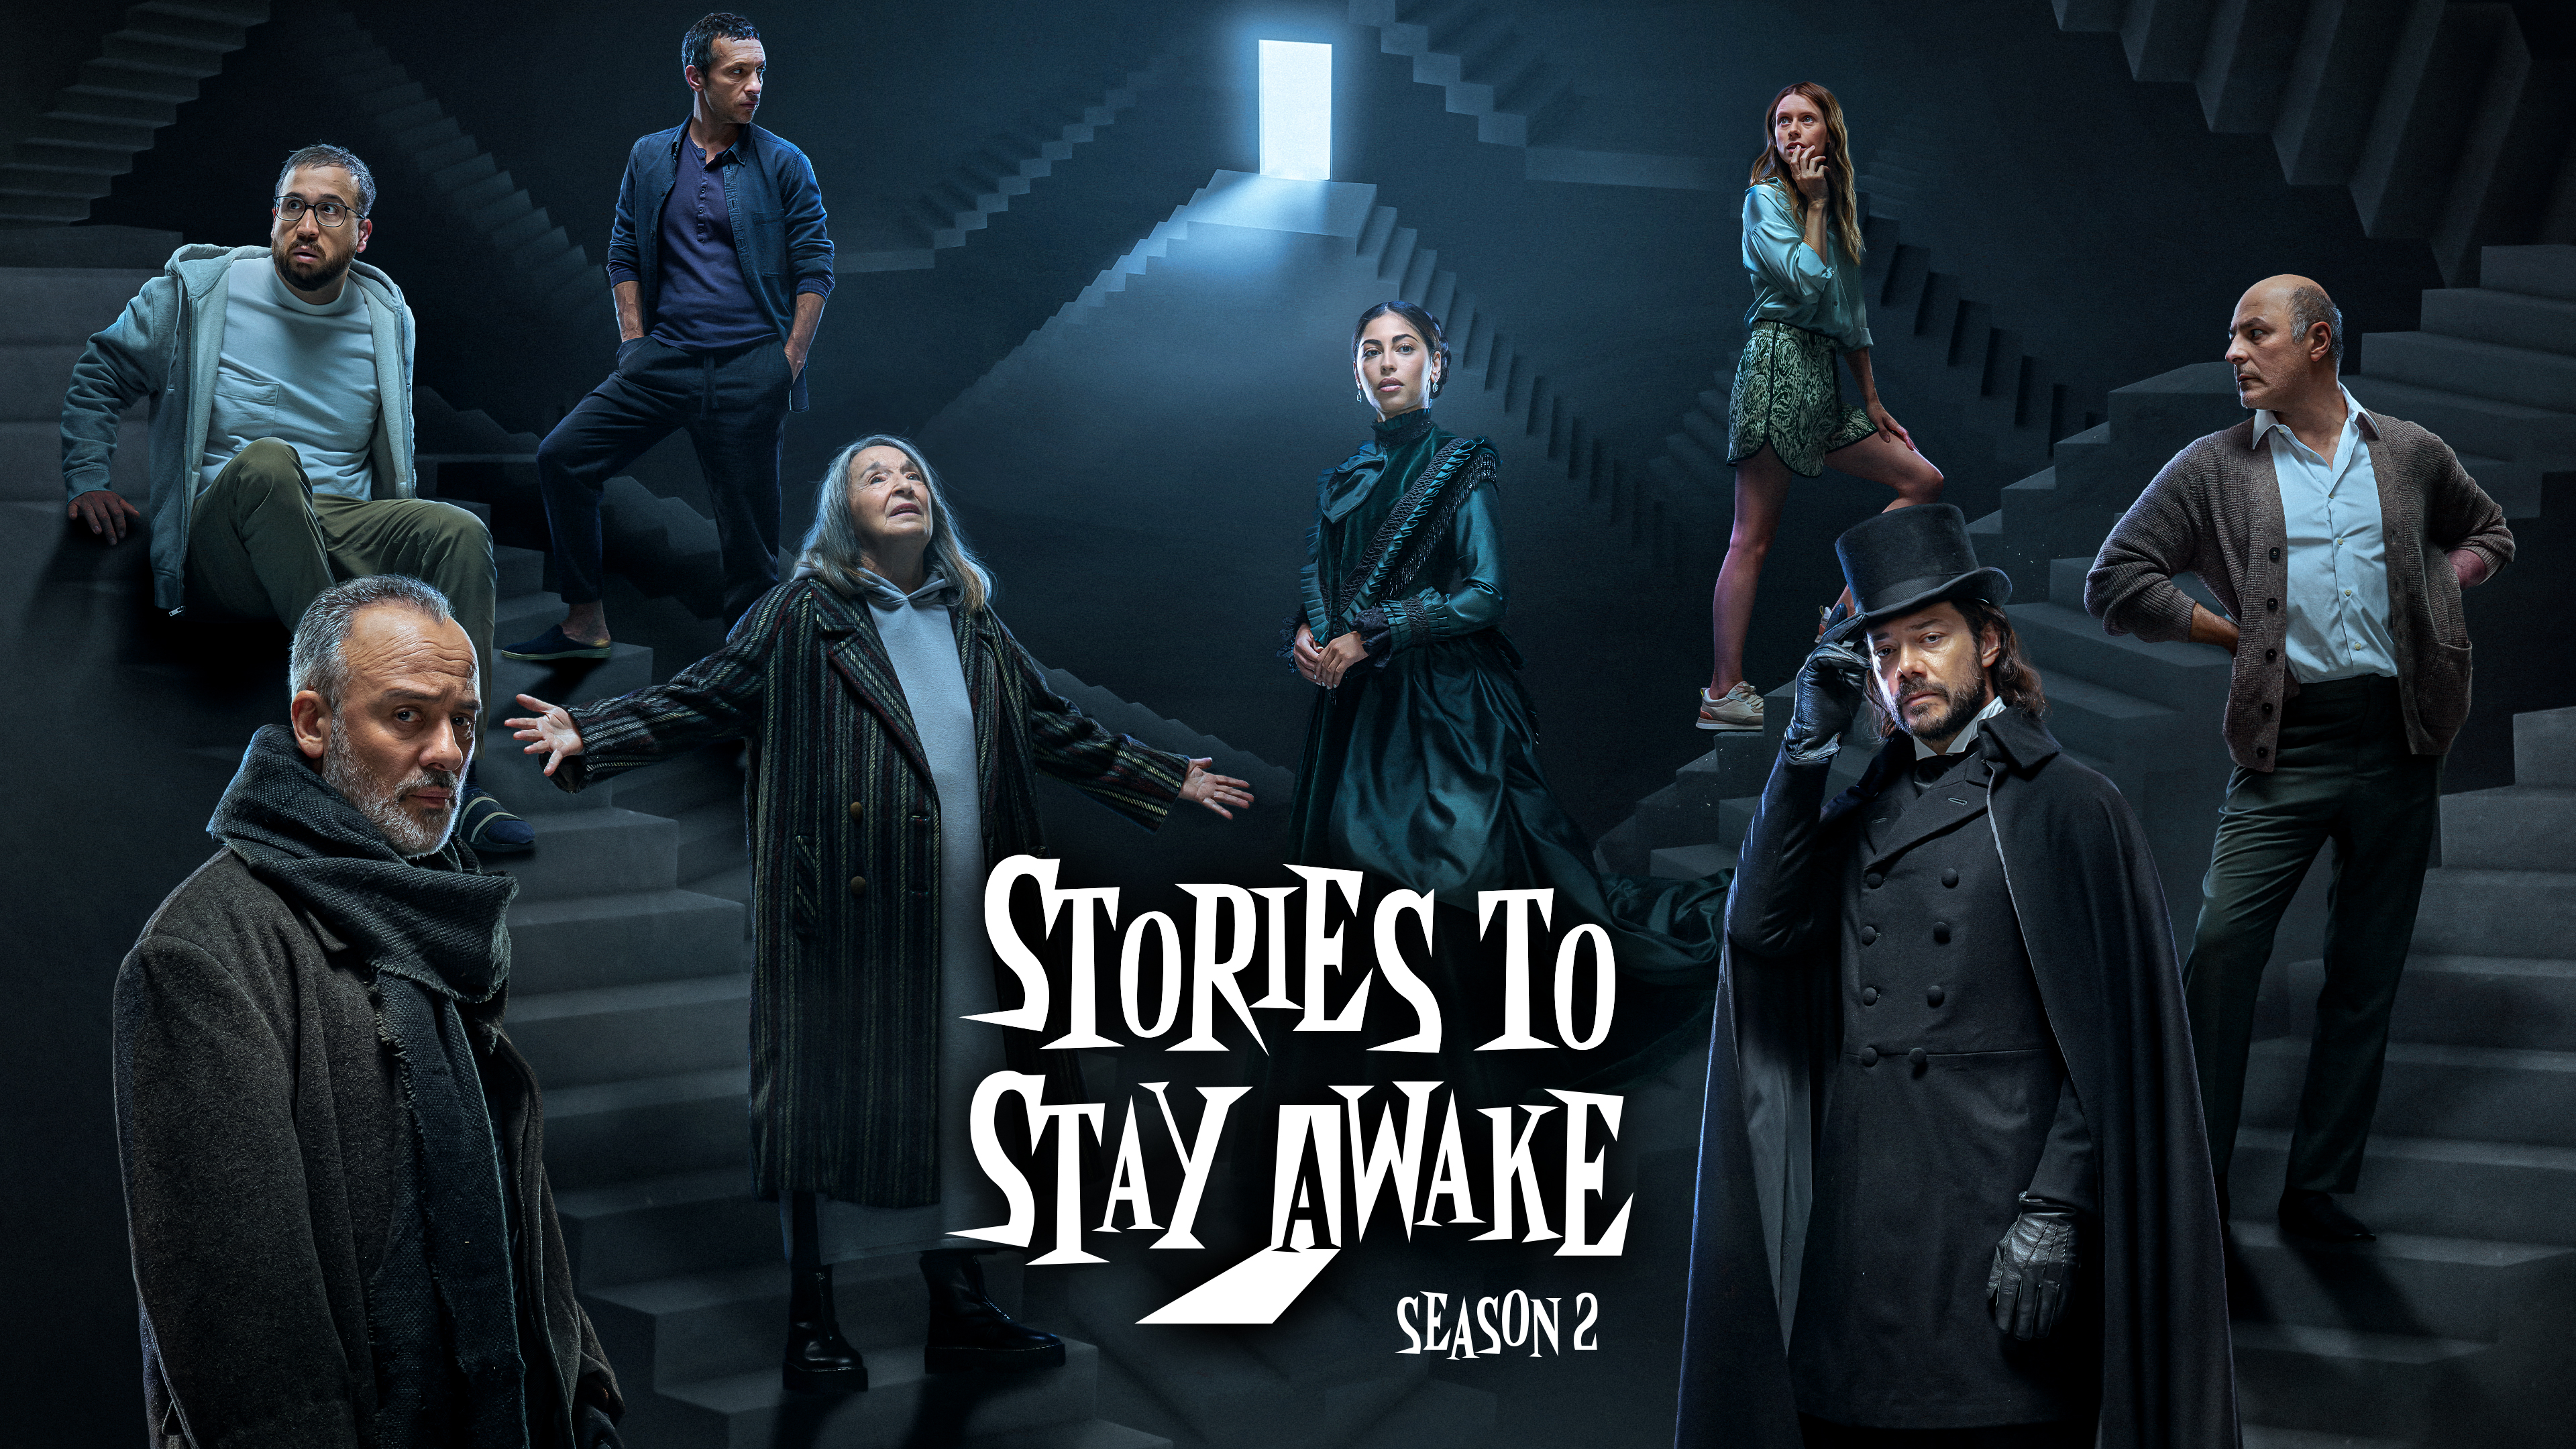 Stories to Stay Awake, Season 2